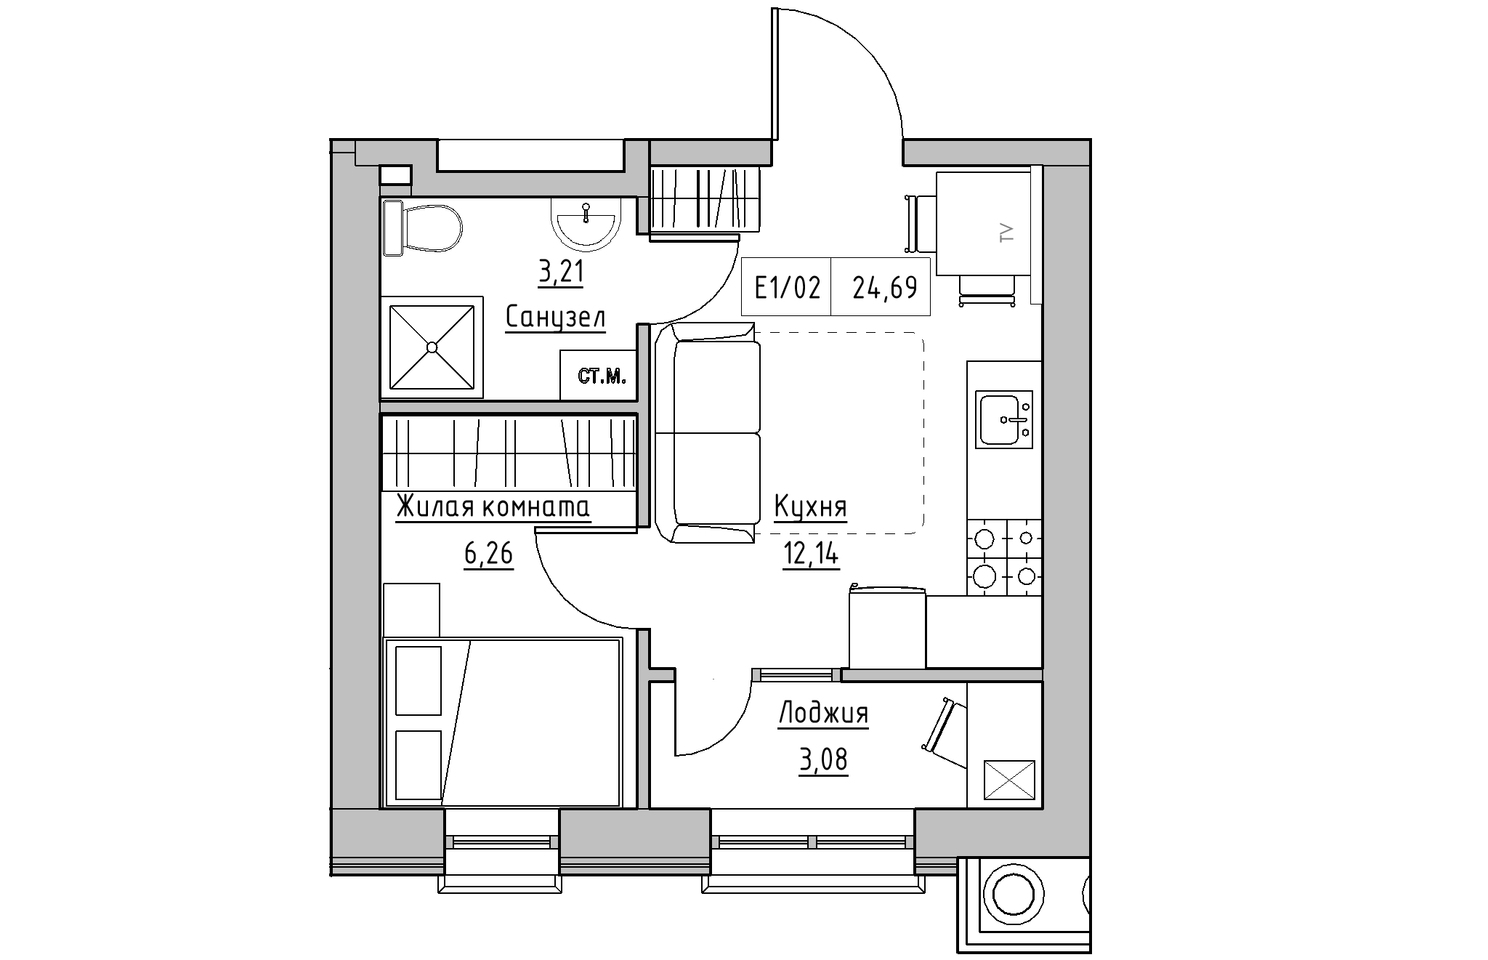 Планування 1-к квартира площею 24.69м2, KS-010-03/0002.